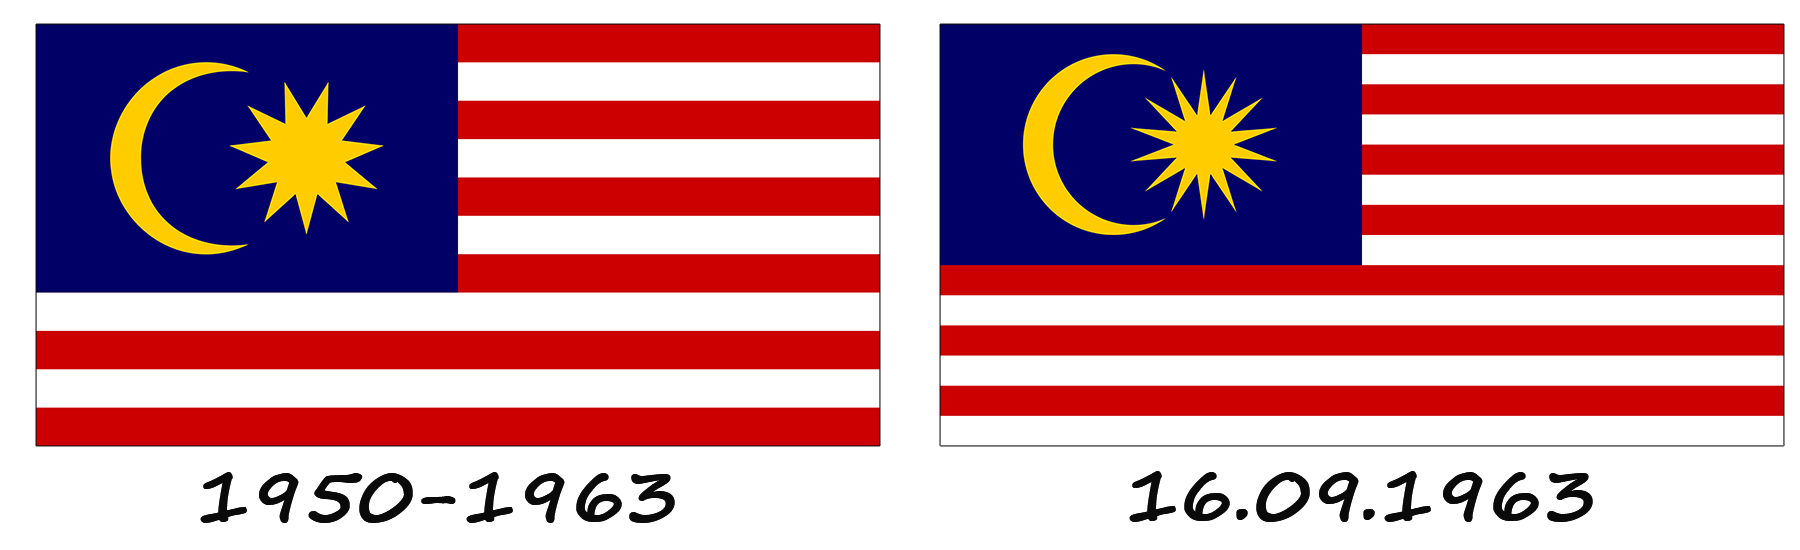 Historia de la bandera de Malasia